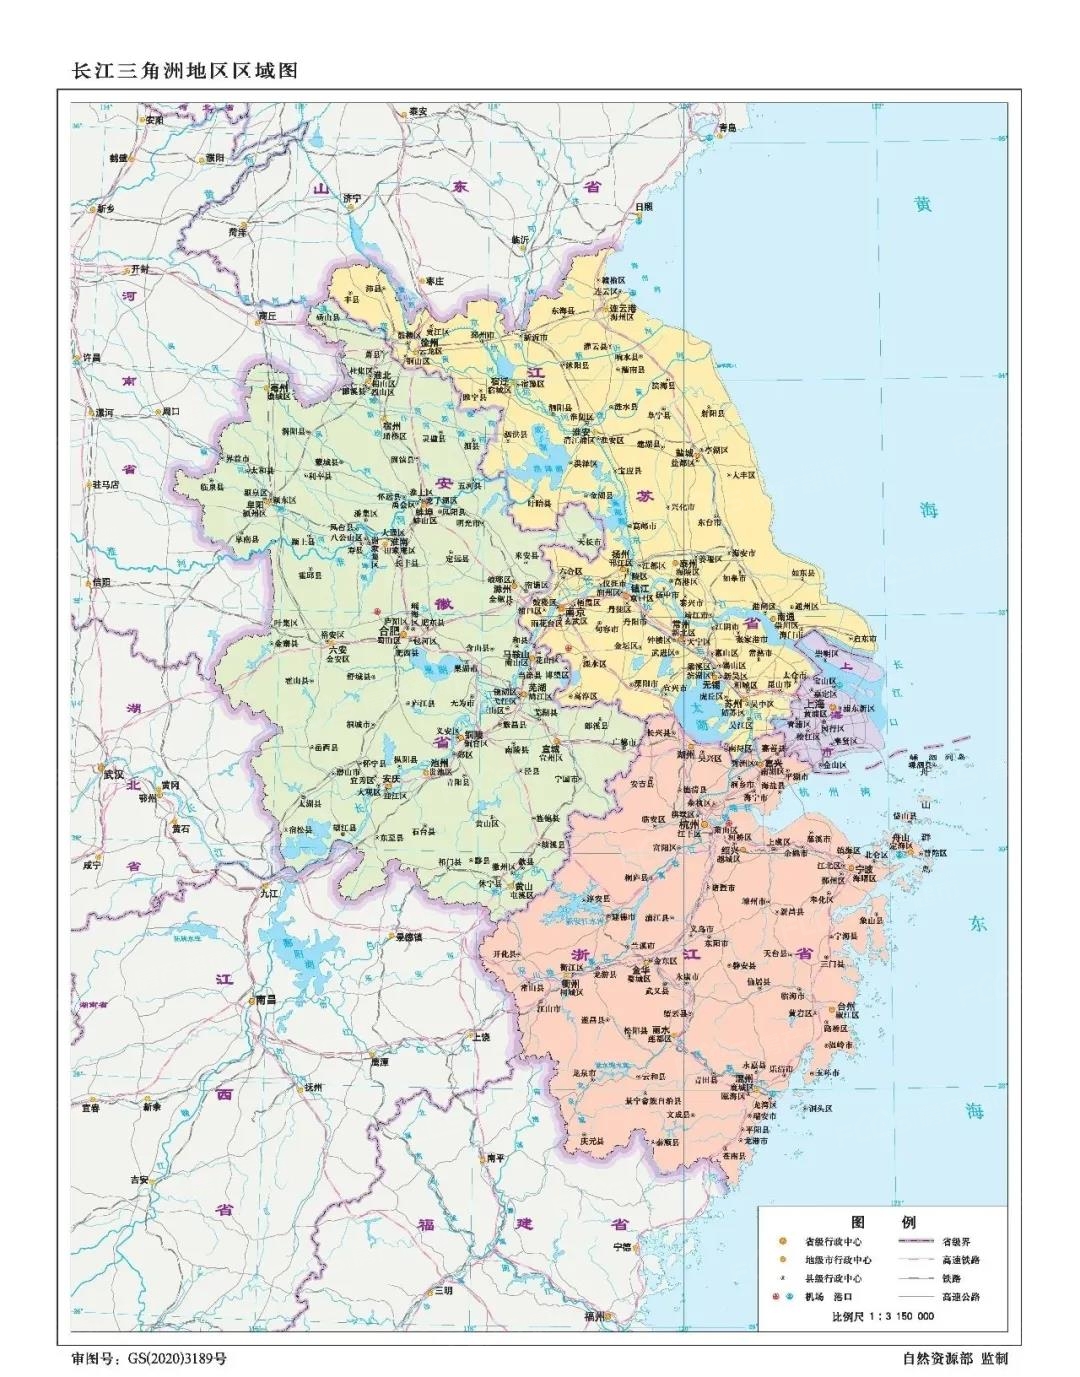 最 新版标准中国地图发布!附最 新南通市政区图,市区图